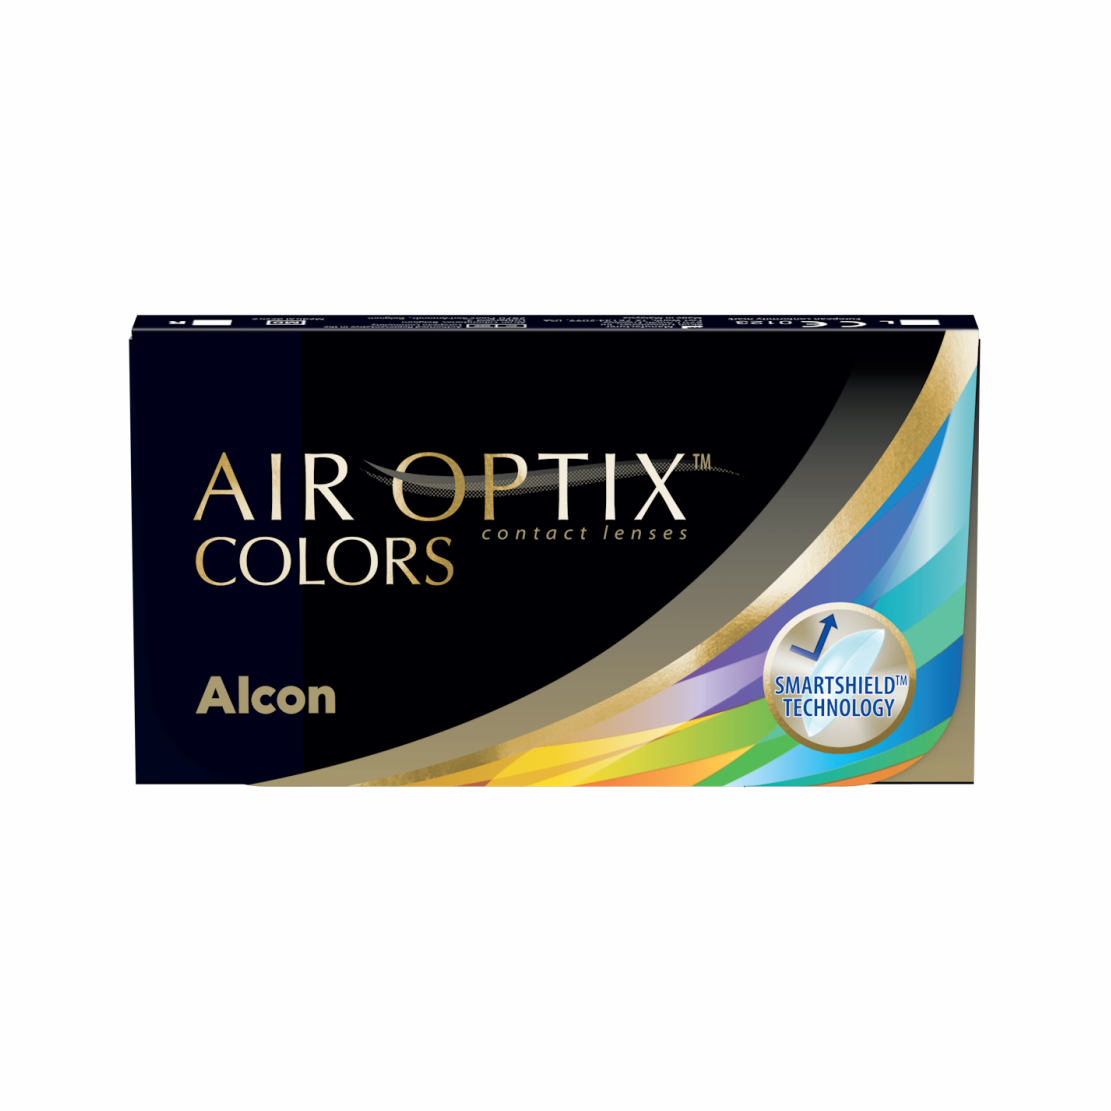 AIR OPTIX COLORS, Alcon